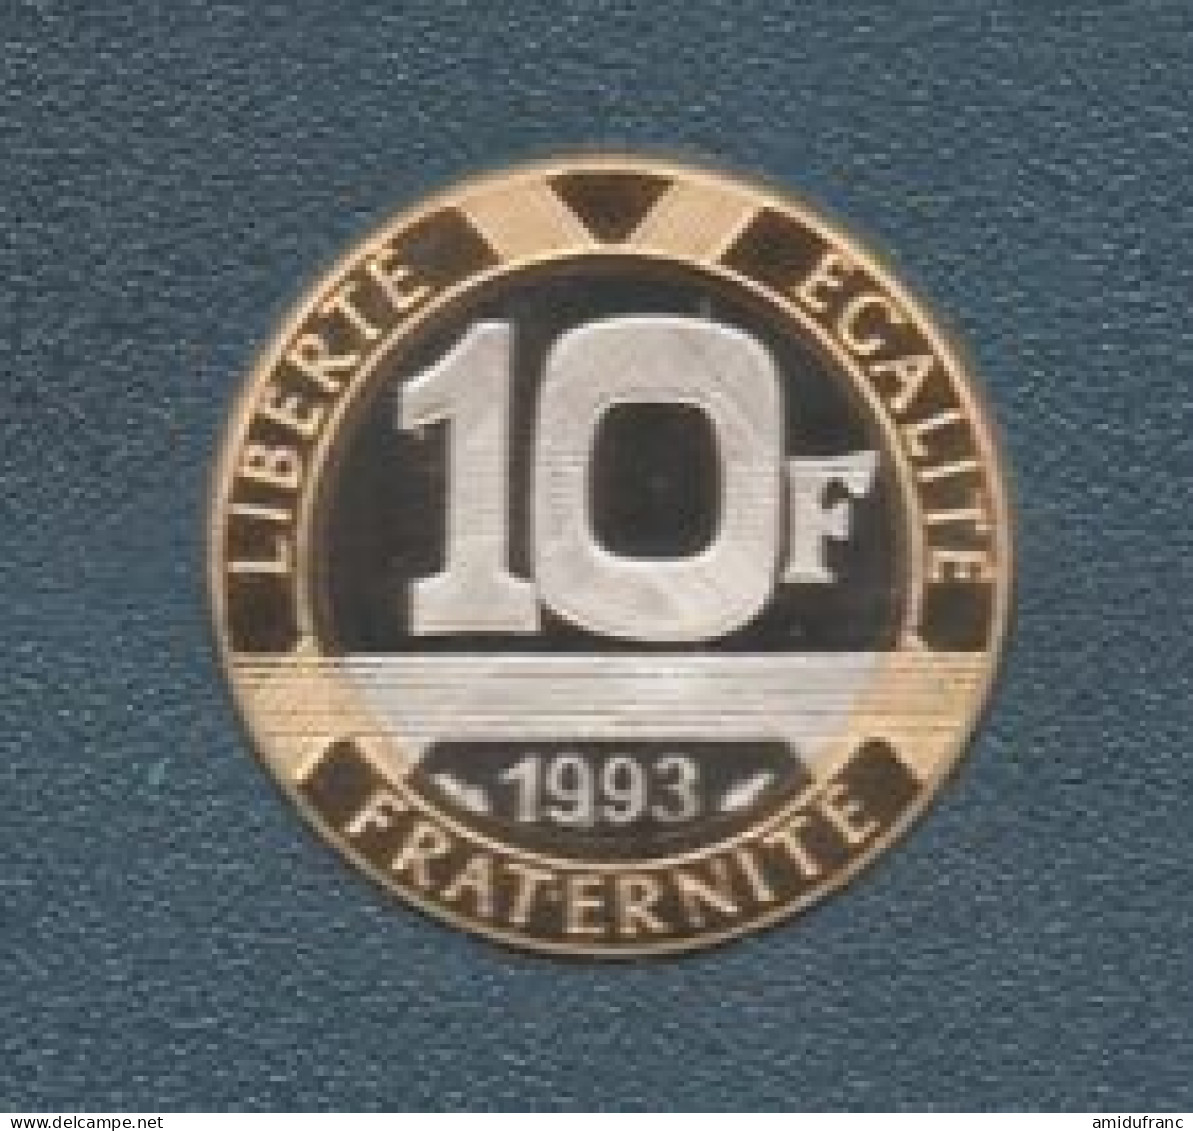 10 Francs 1993 BE Du Coffret - BU, BE & Muntencassettes